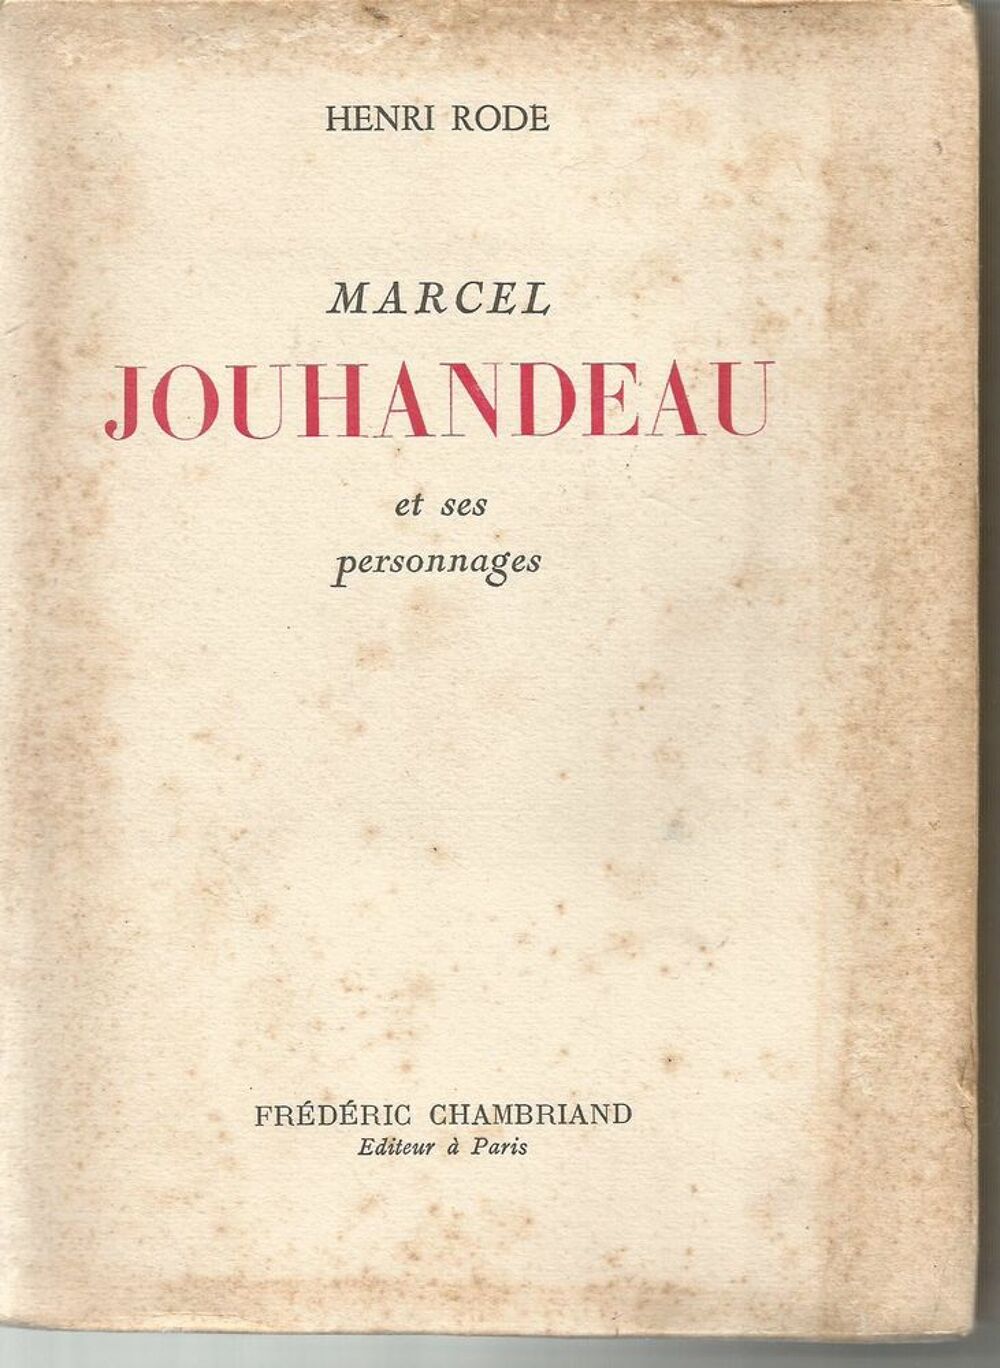 Marcel JOUHANDEAU et ses personnages par Henri RODE Livres et BD